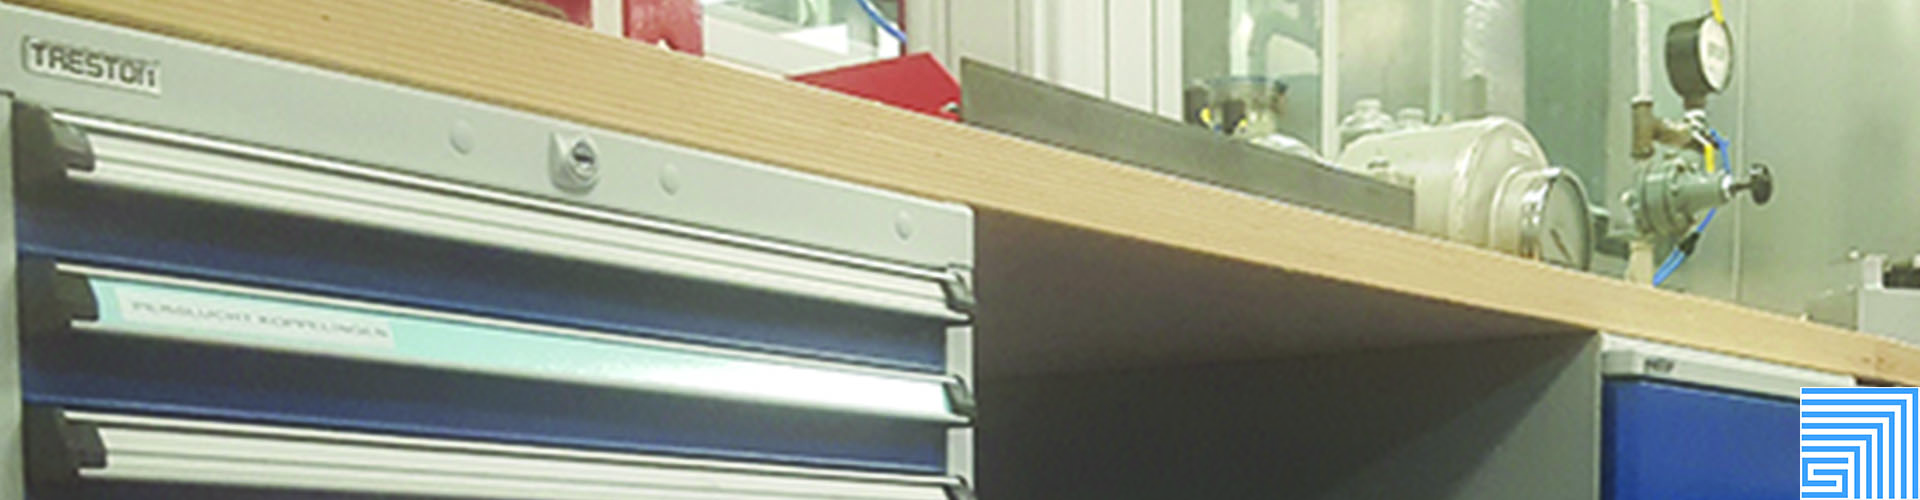 Sovella Nederland Treston ladekast type 55 onder een werktafelblad in een werkplaats